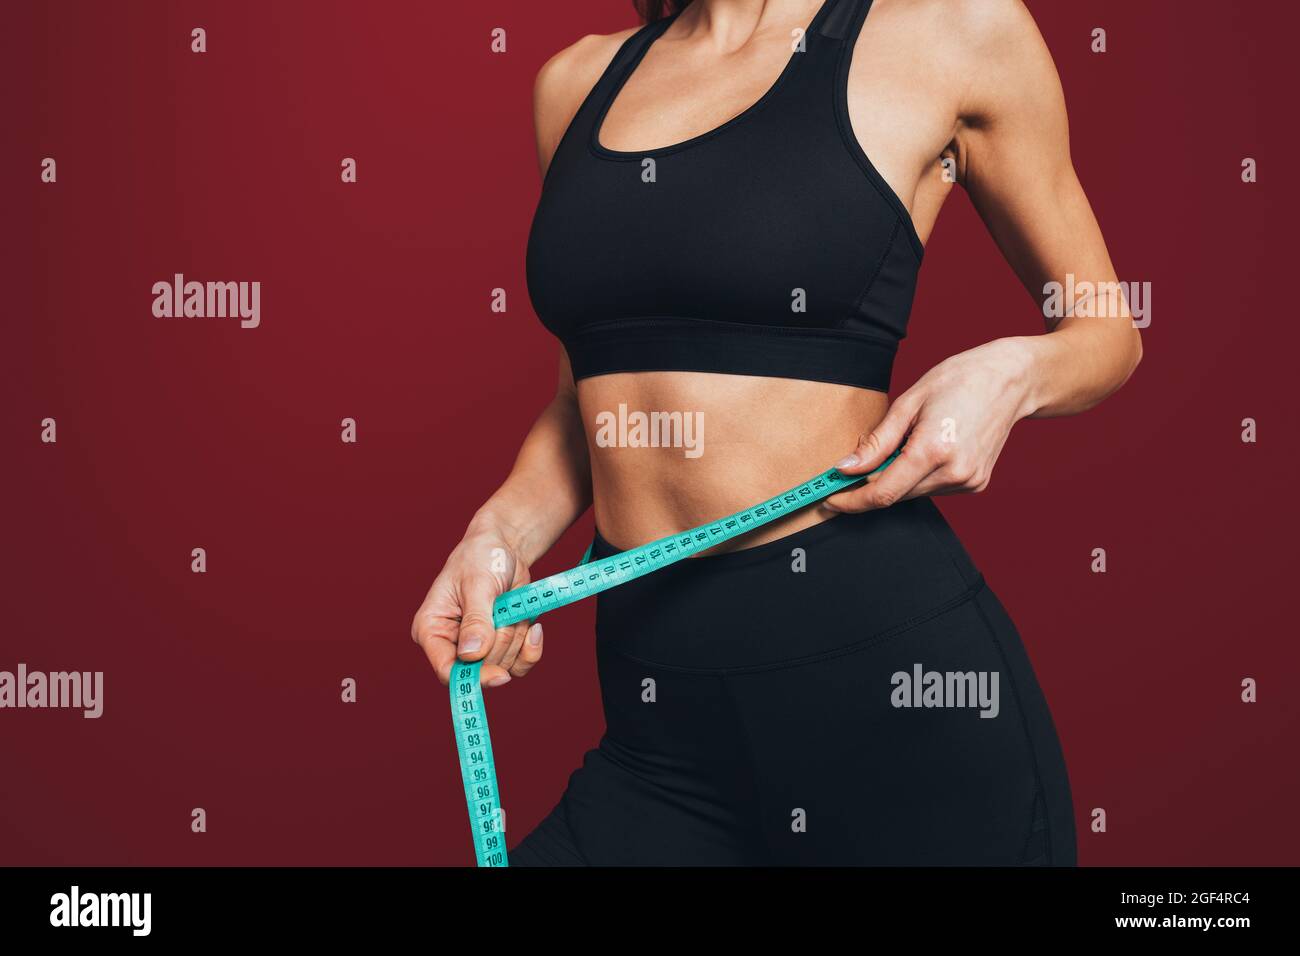 Sportlerin für mittlere Erwachsene, die die Taille misst, mit Klebeband vor kastanienbraunem Hintergrund Stockfoto